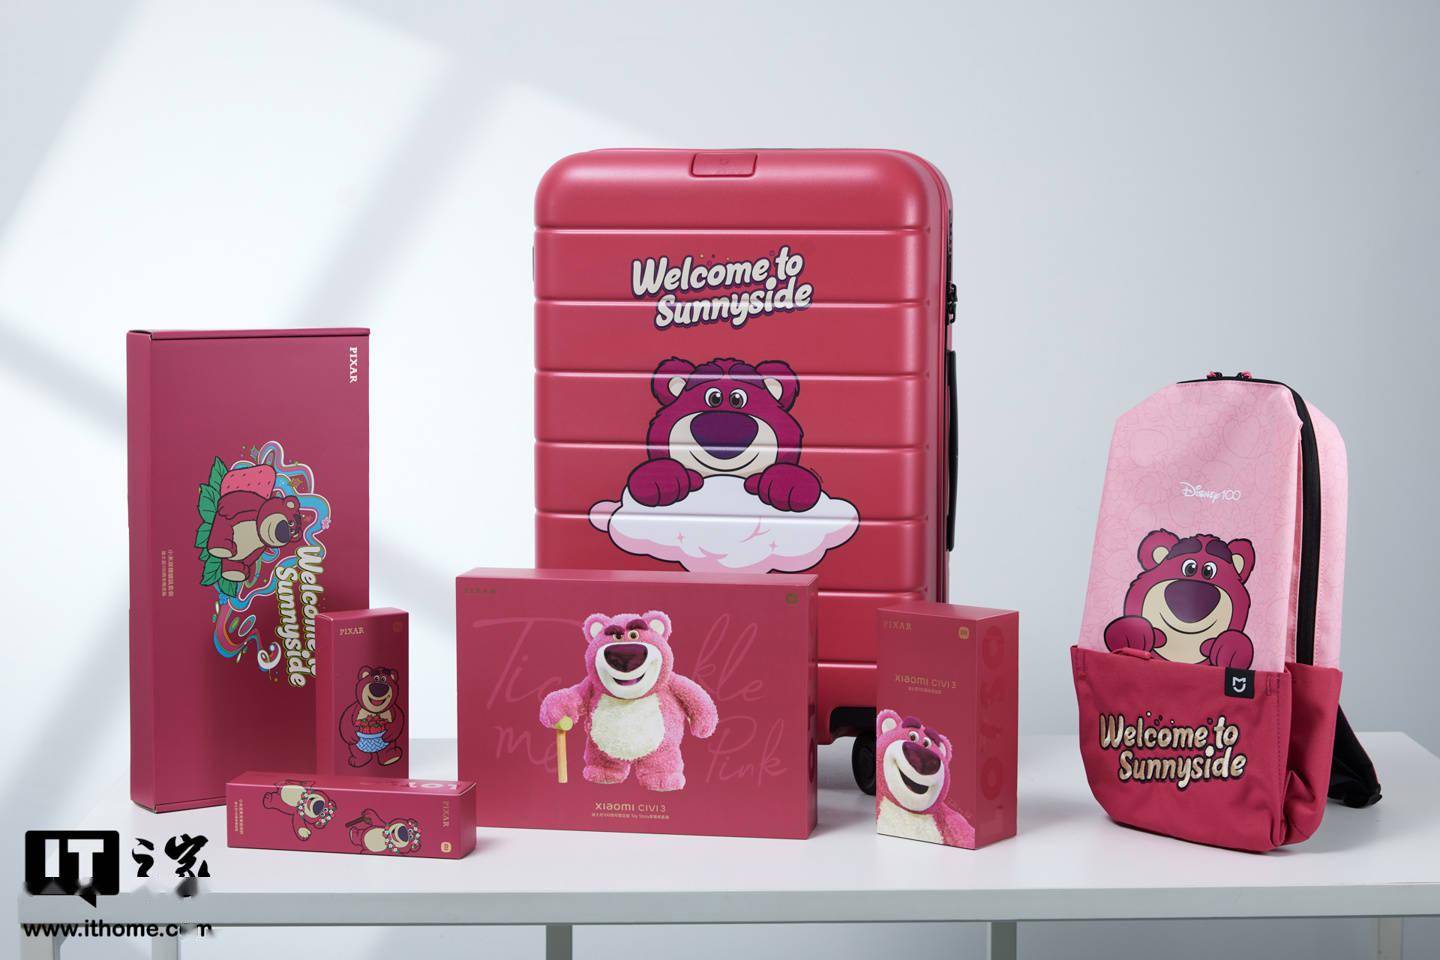     小米 Civi 3 推出迪士尼草莓熊限定版，粉红色可爱全家福图公开